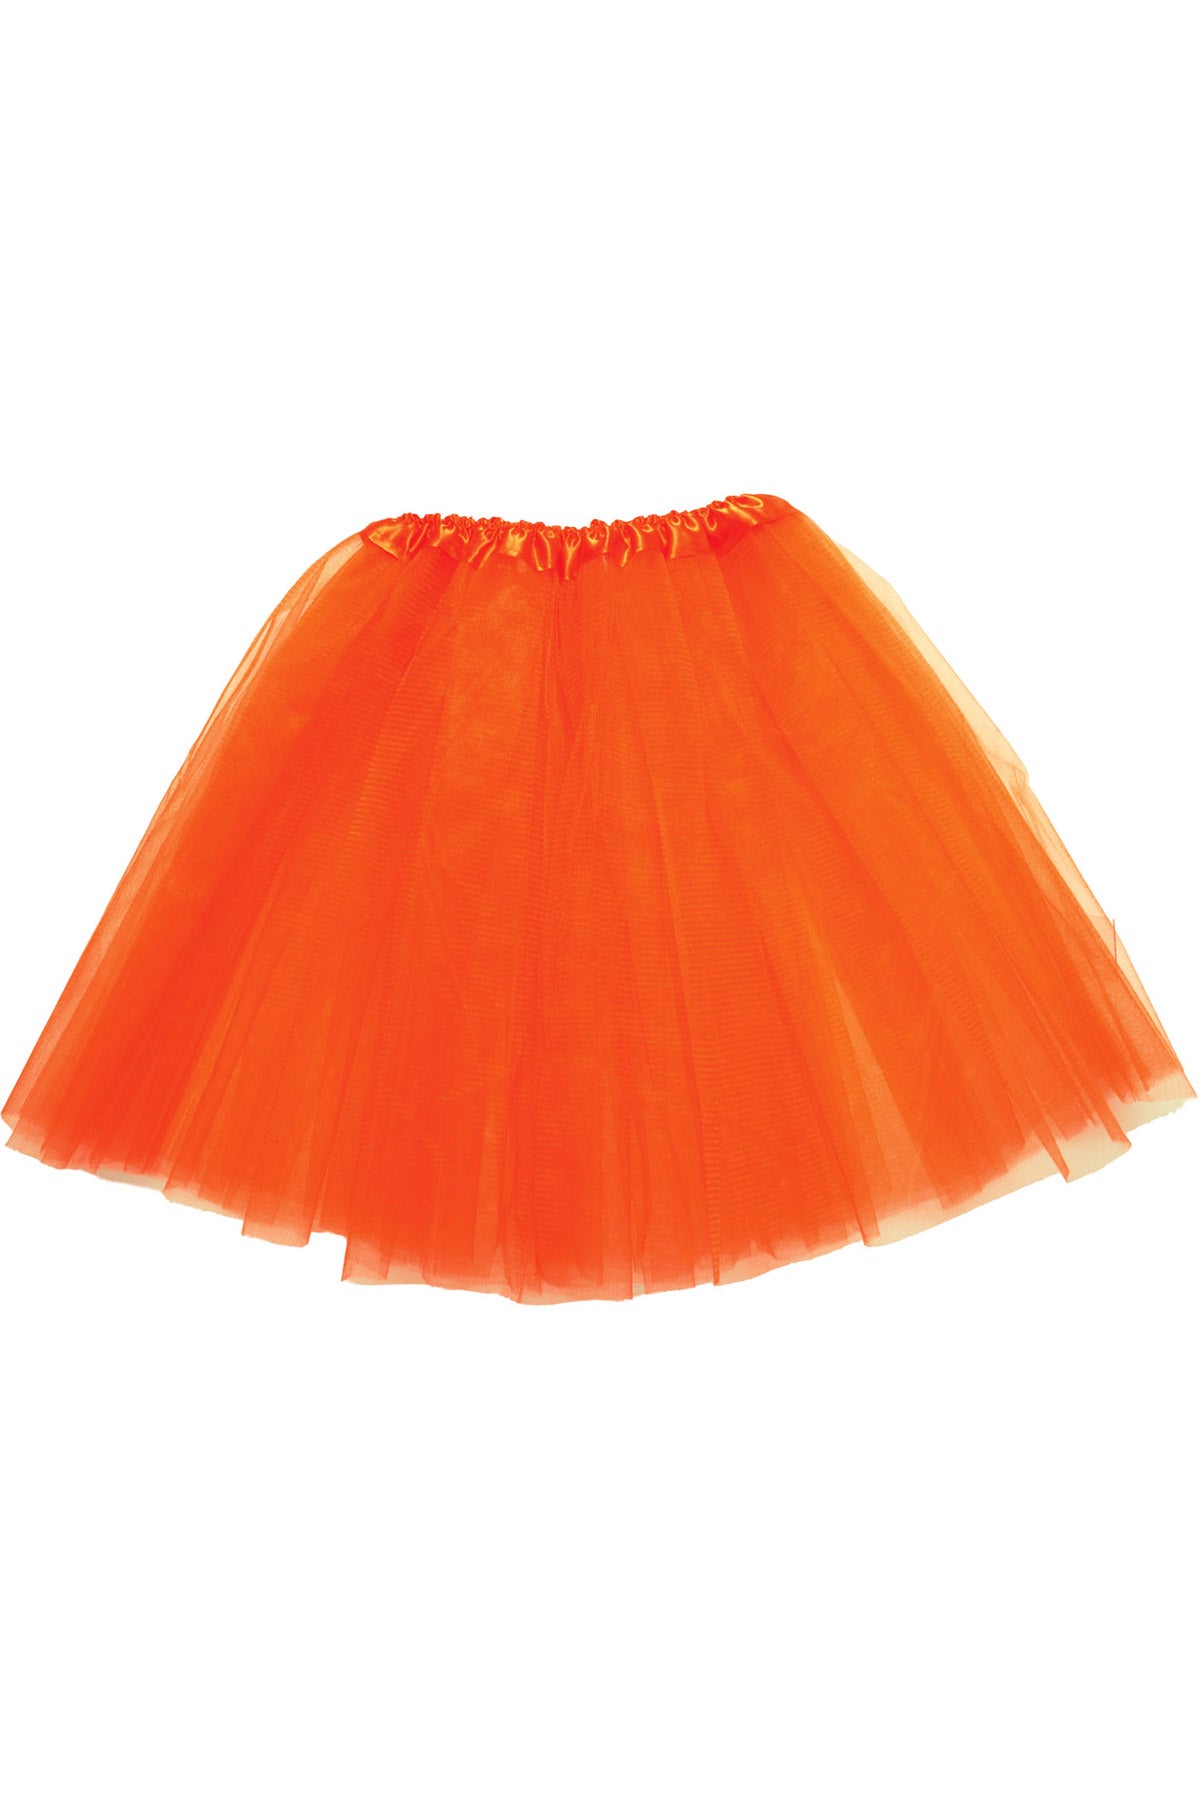 Promo Tutu - Neon Orange Underwraps  29885